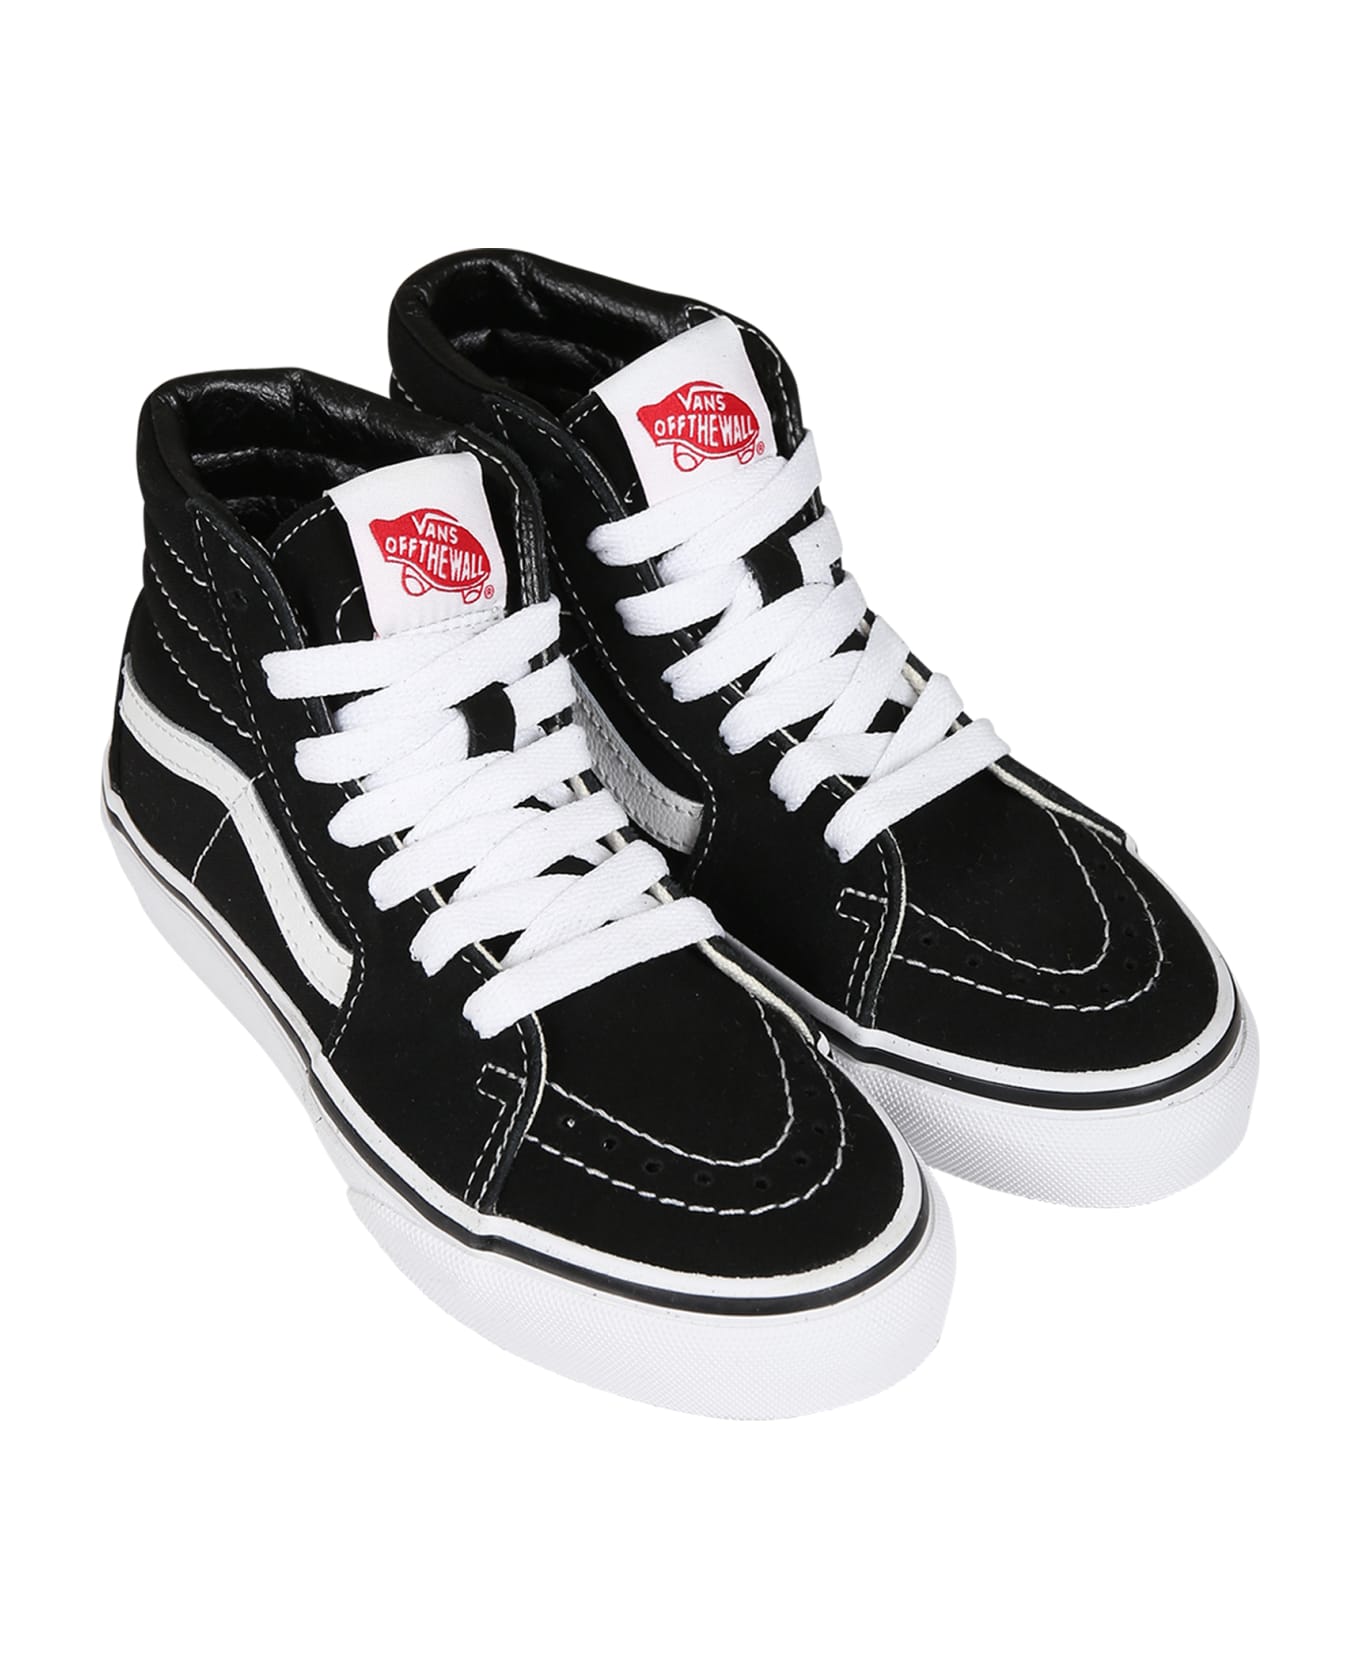 Vans Black Sk8-hi Sneakers For Kids - Black